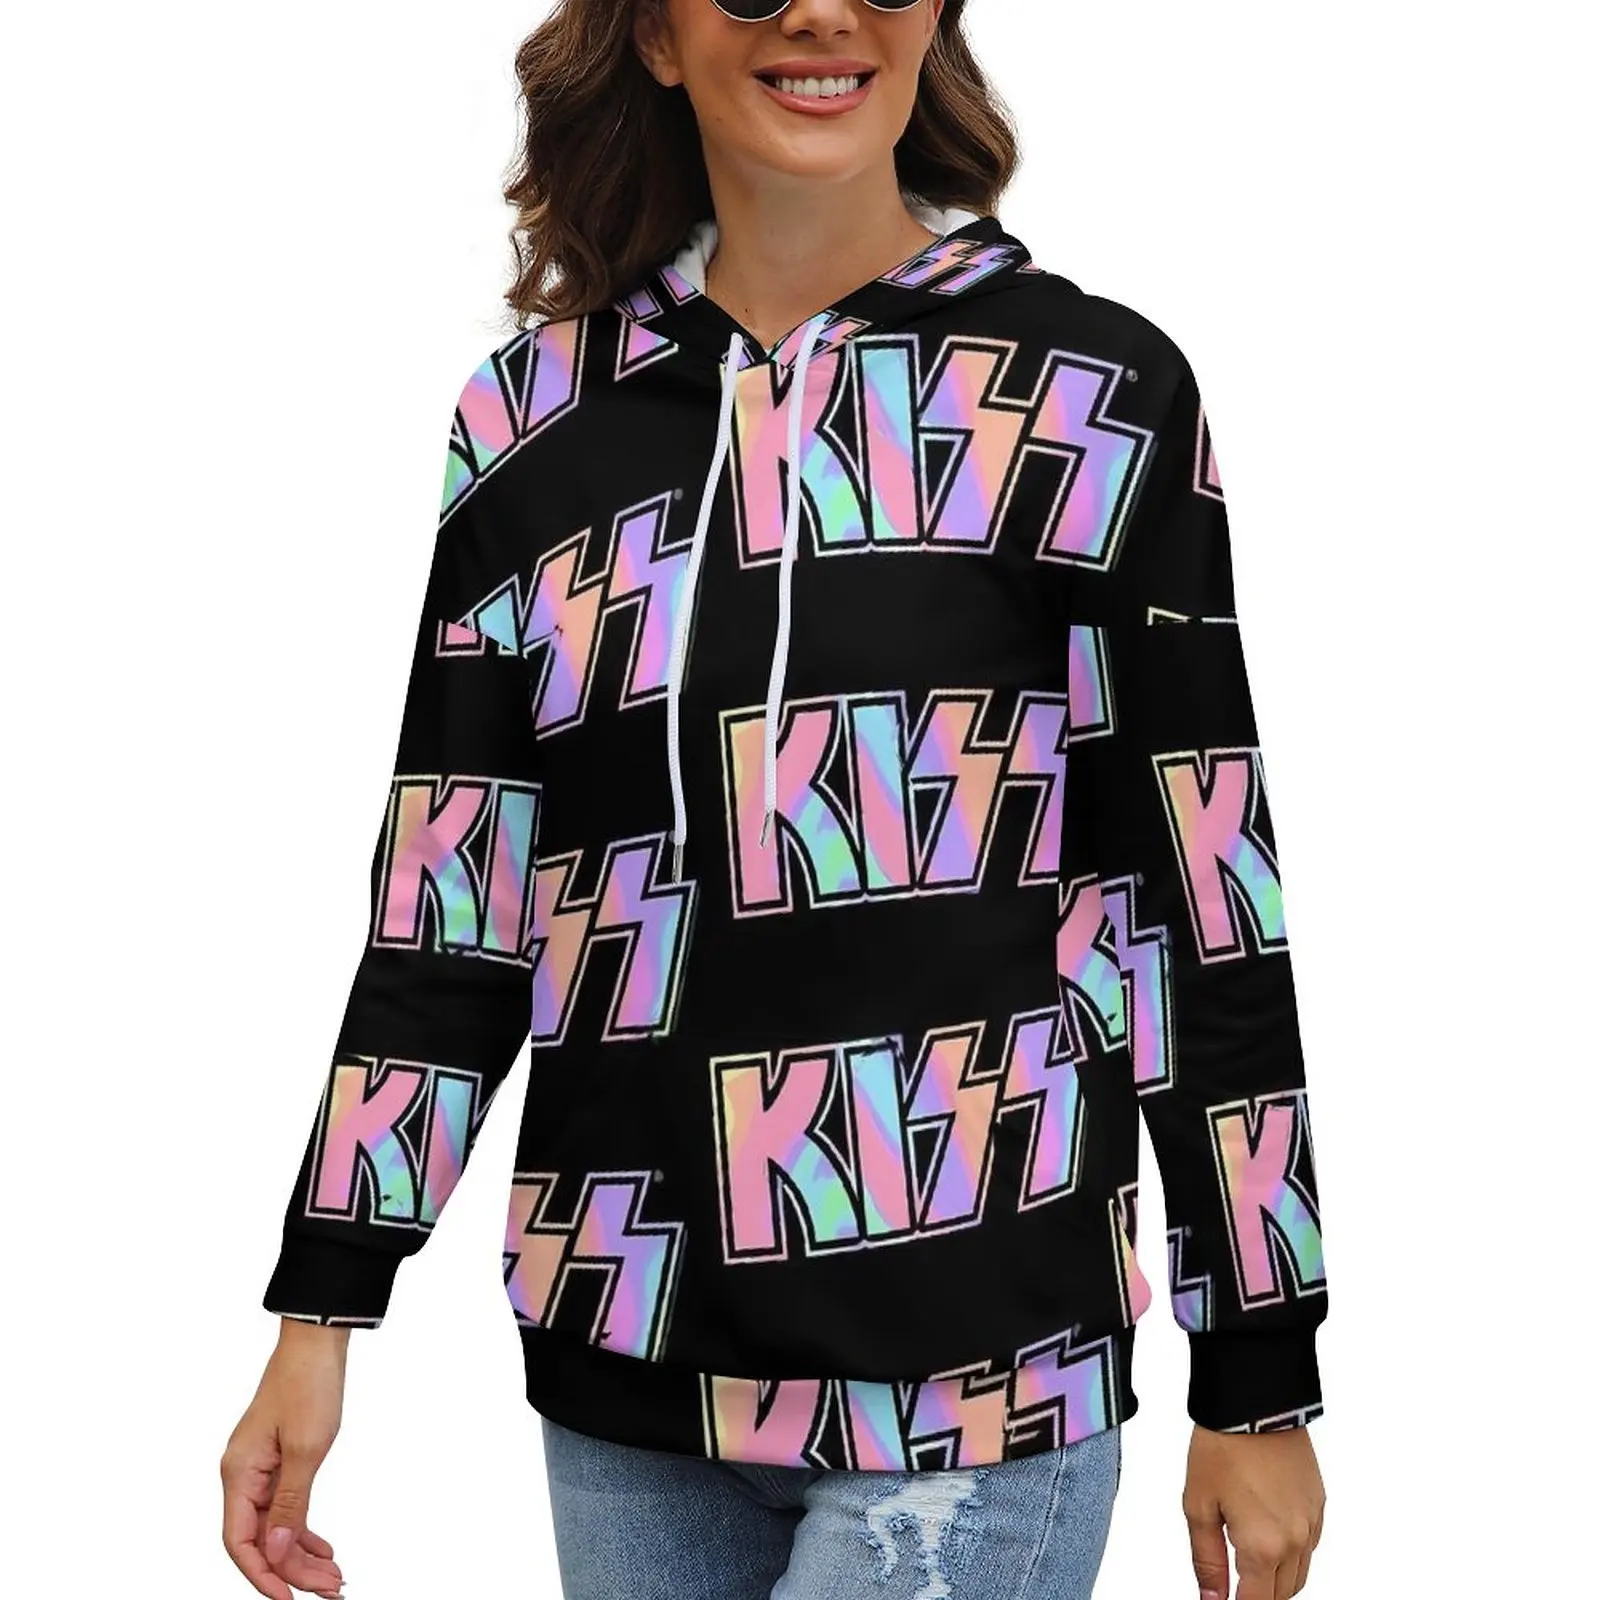 

Худи с логотипом группы Kiss, Модный пуловер с принтом пастельных цветов, худи, женские толстовки с длинным рукавом, большие размеры, Классические худи с графическим принтом